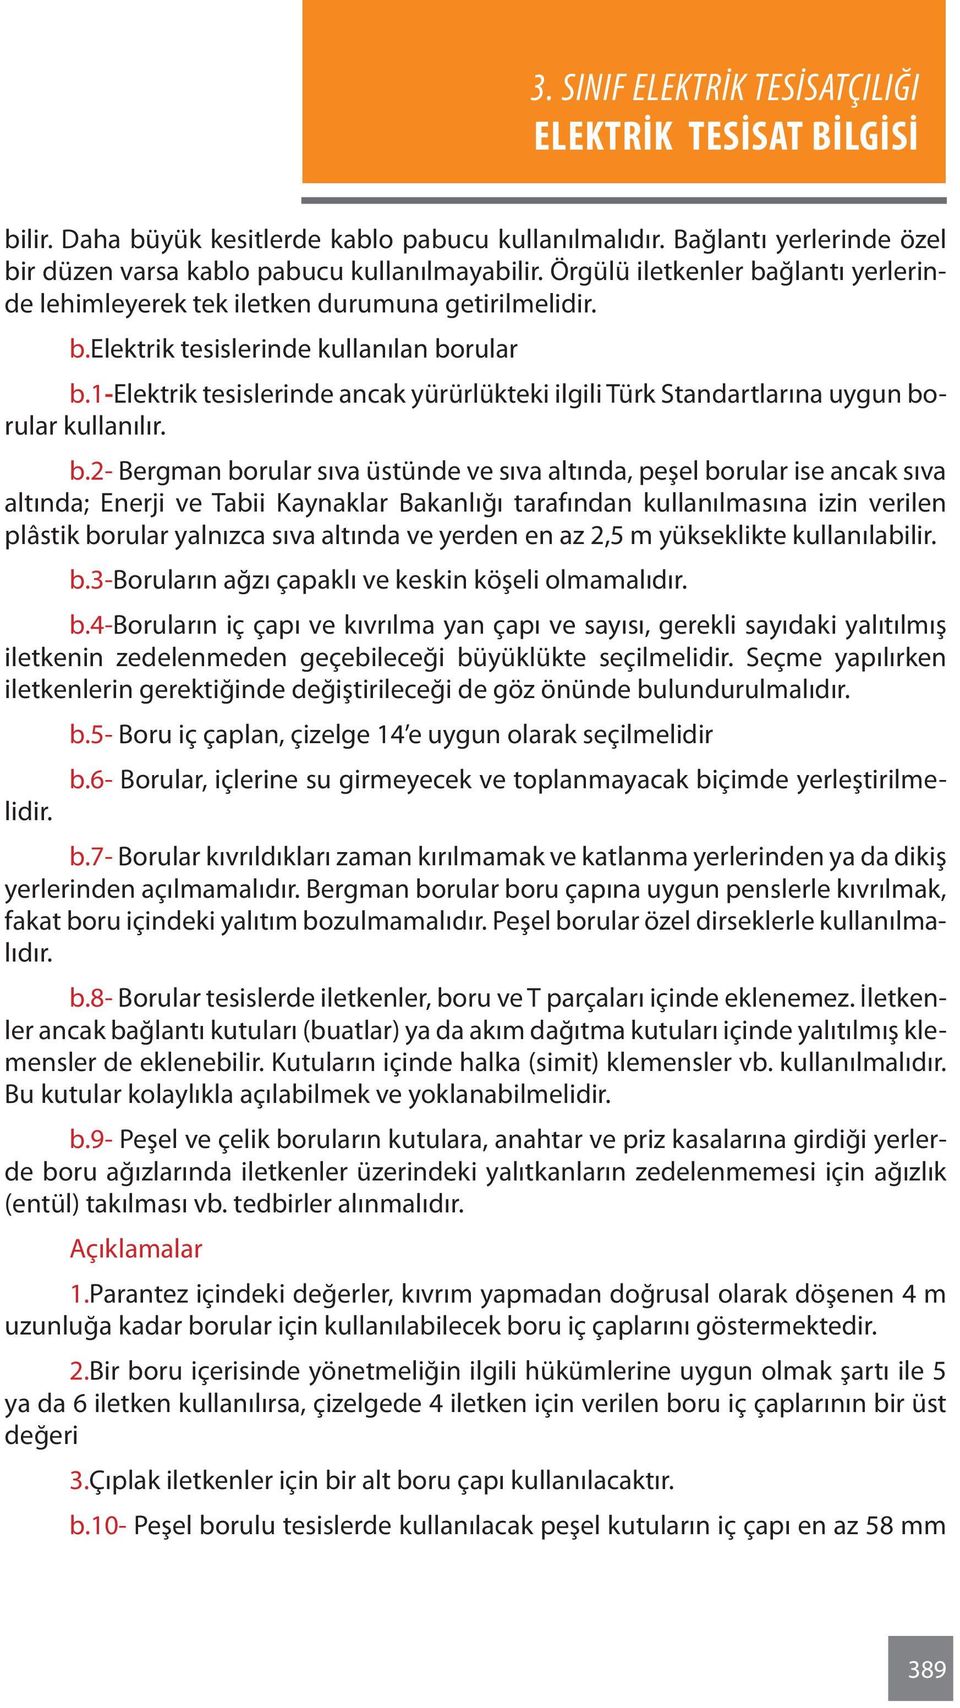 1-elektrik tesislerinde ancak yürürlükteki ilgili Türk Standartlarına uygun bo